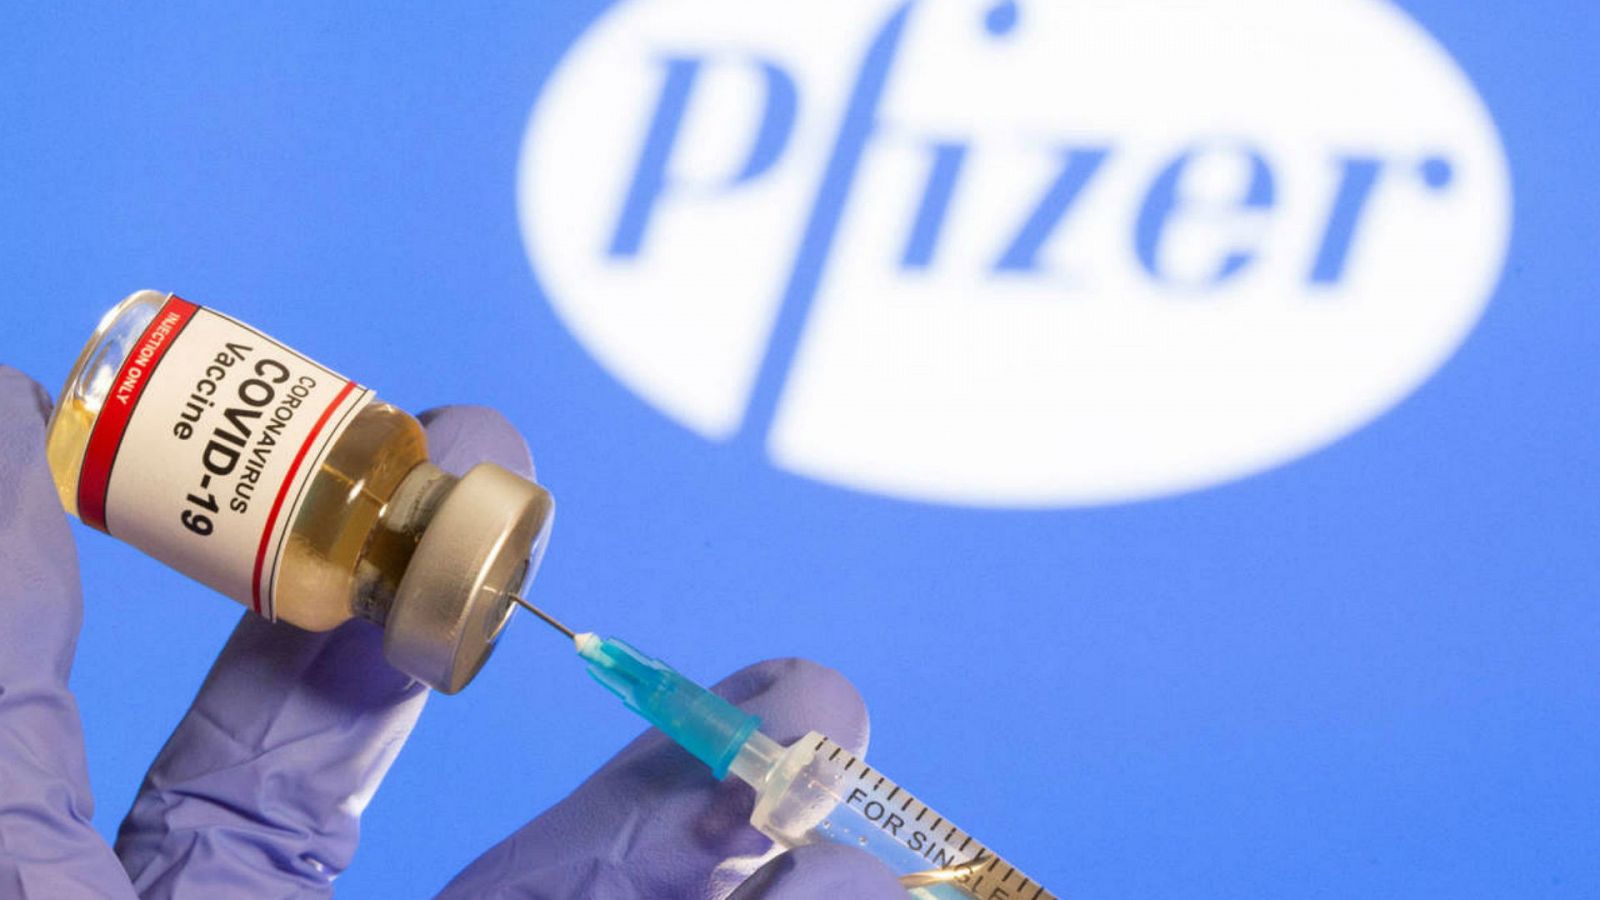  Boletines RNE - La vacuna de Pfizer y BioNtech será la primera en recibir la luz verde de la Agencia Europea del Medicamento - Escuchar ahora